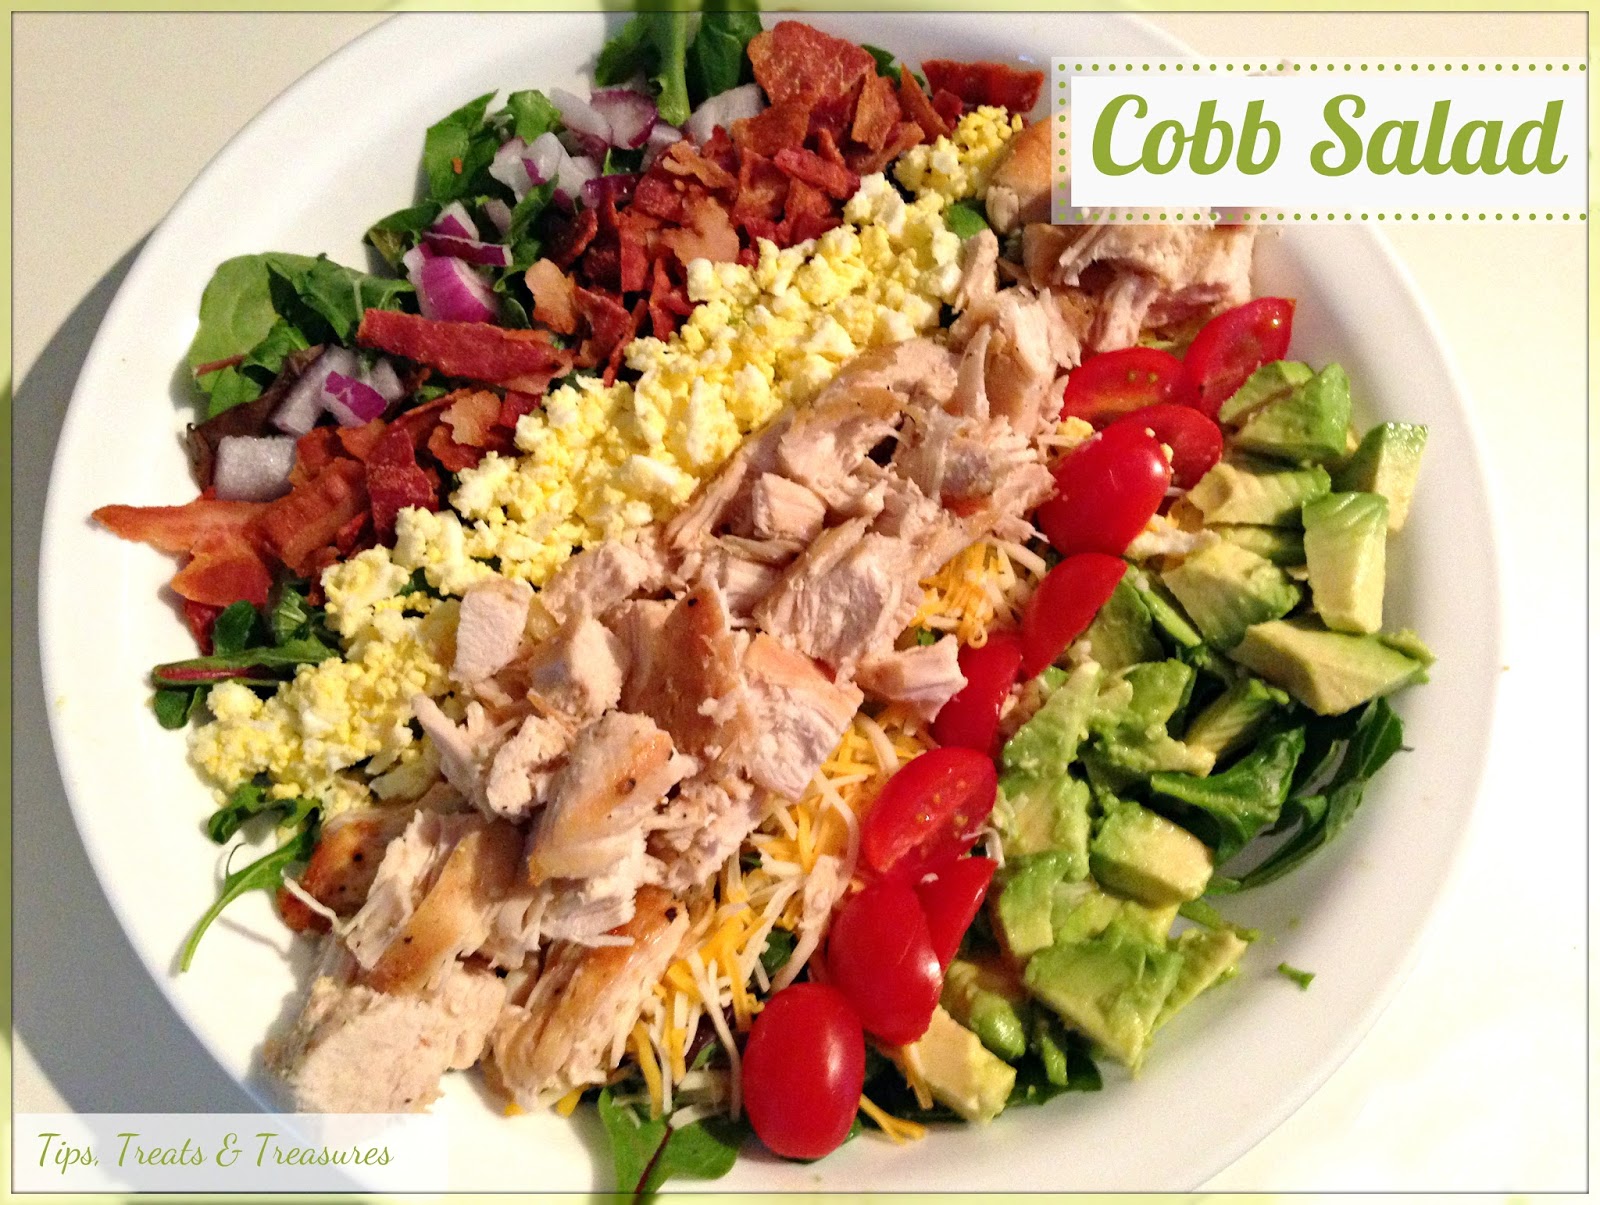 Tips, Treats & Treasures: Cobb Salad